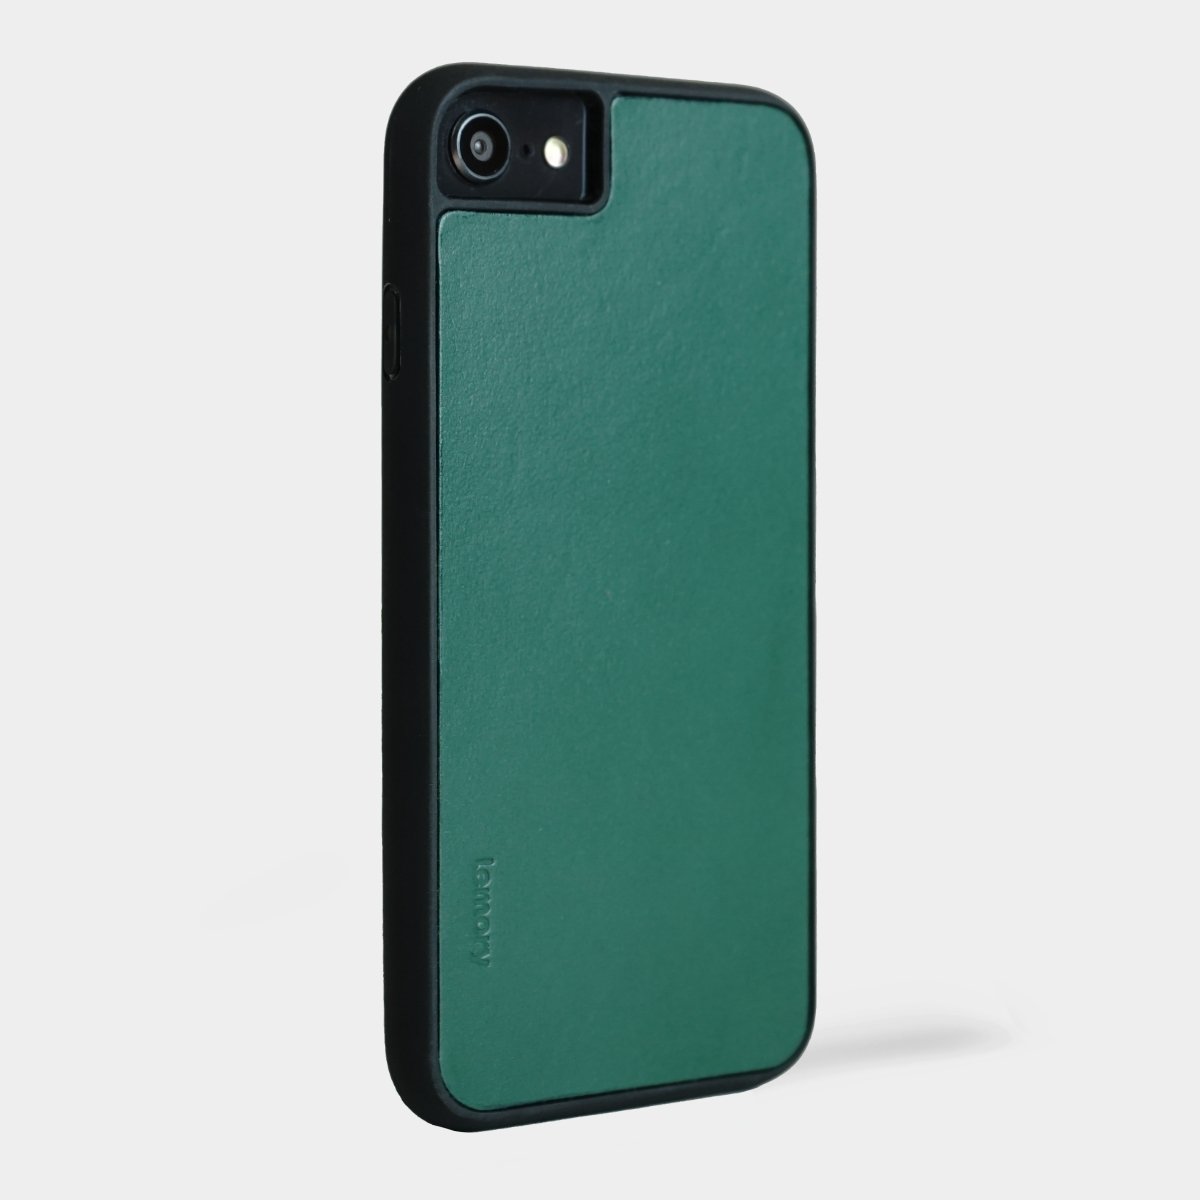 Prémiový kožený kryt Lemory PROTECT na mobil Apple iPhone 7 / 8 / SE 2020 - Tmavě zelený (Prémiový kožený kryt, pouzdro, obal Lemory PROTECT na mobilní telefon Apple iPhone 7 / Apple iPhone 8 / Apple iPhone SE 2020 - Tmavě zelený)